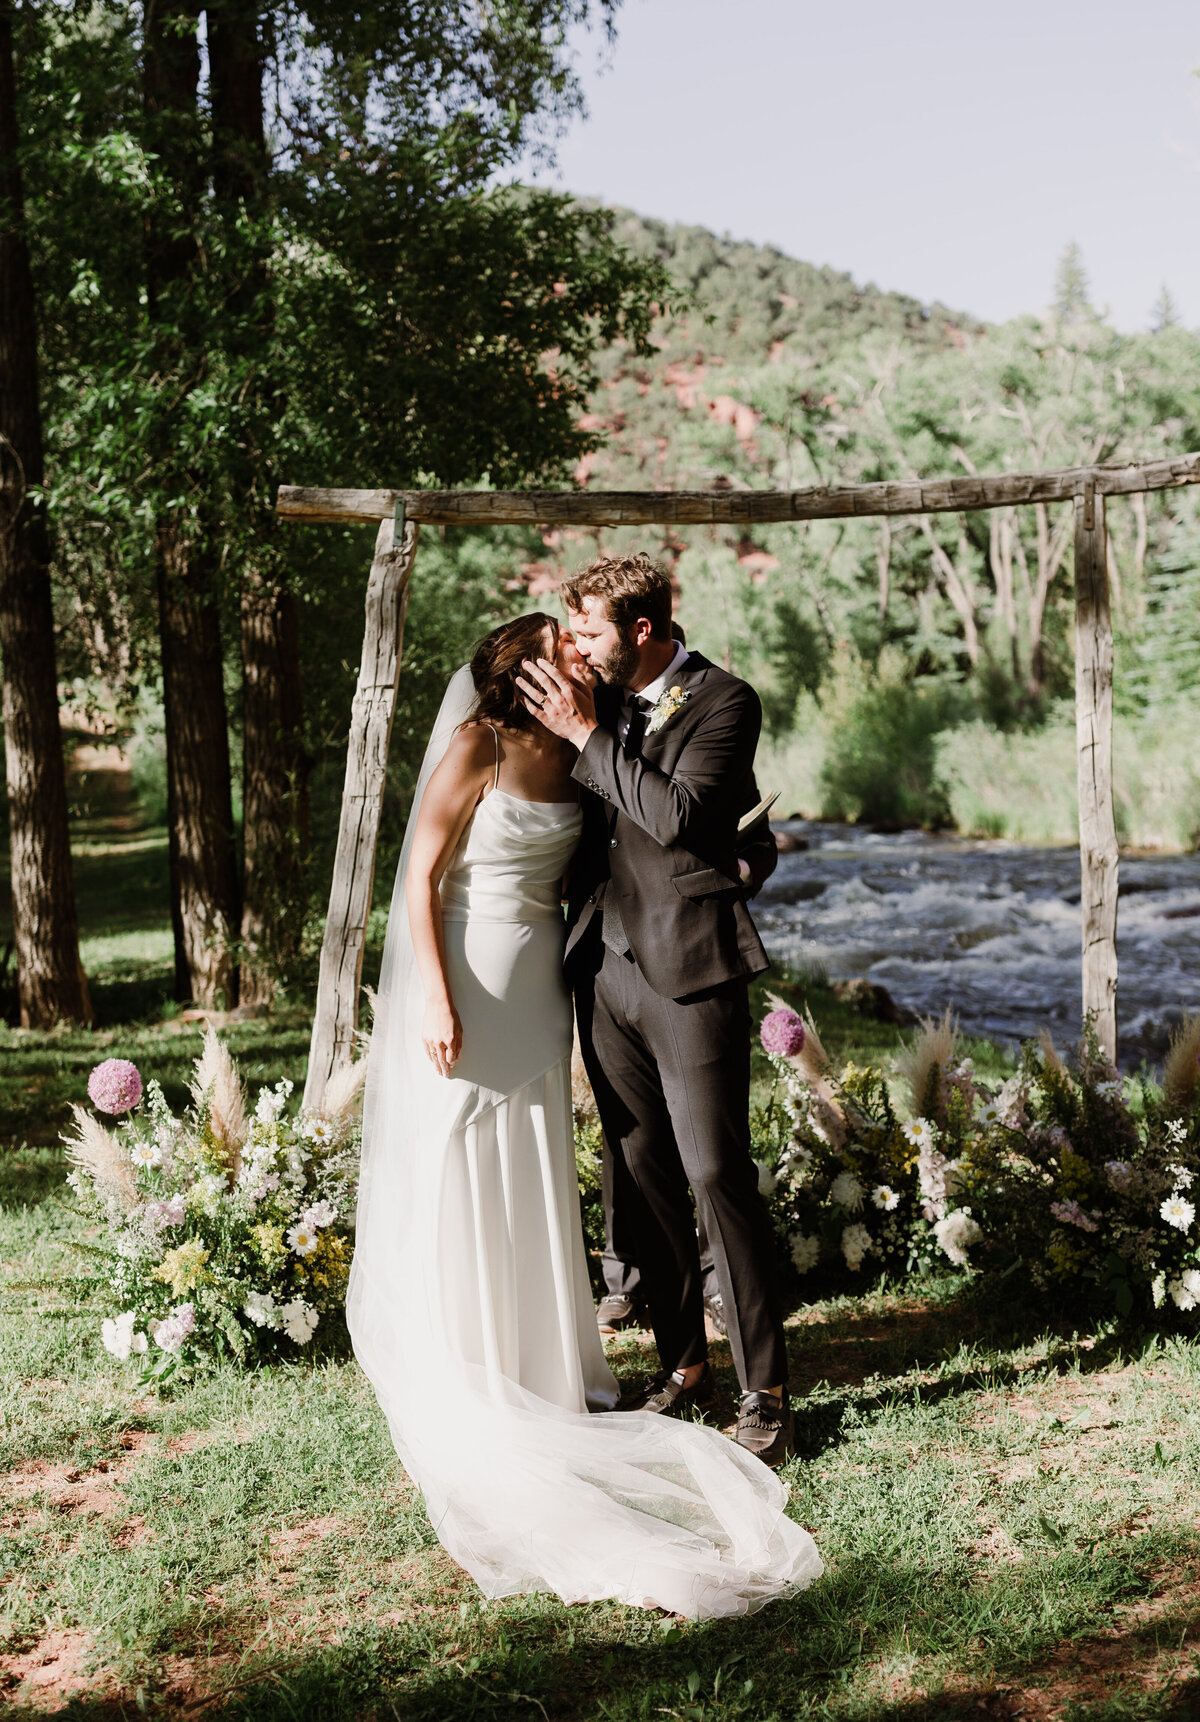 Bride and groom kissing at outdoor wedding ceremony at Dallenbach Ranch Colorado